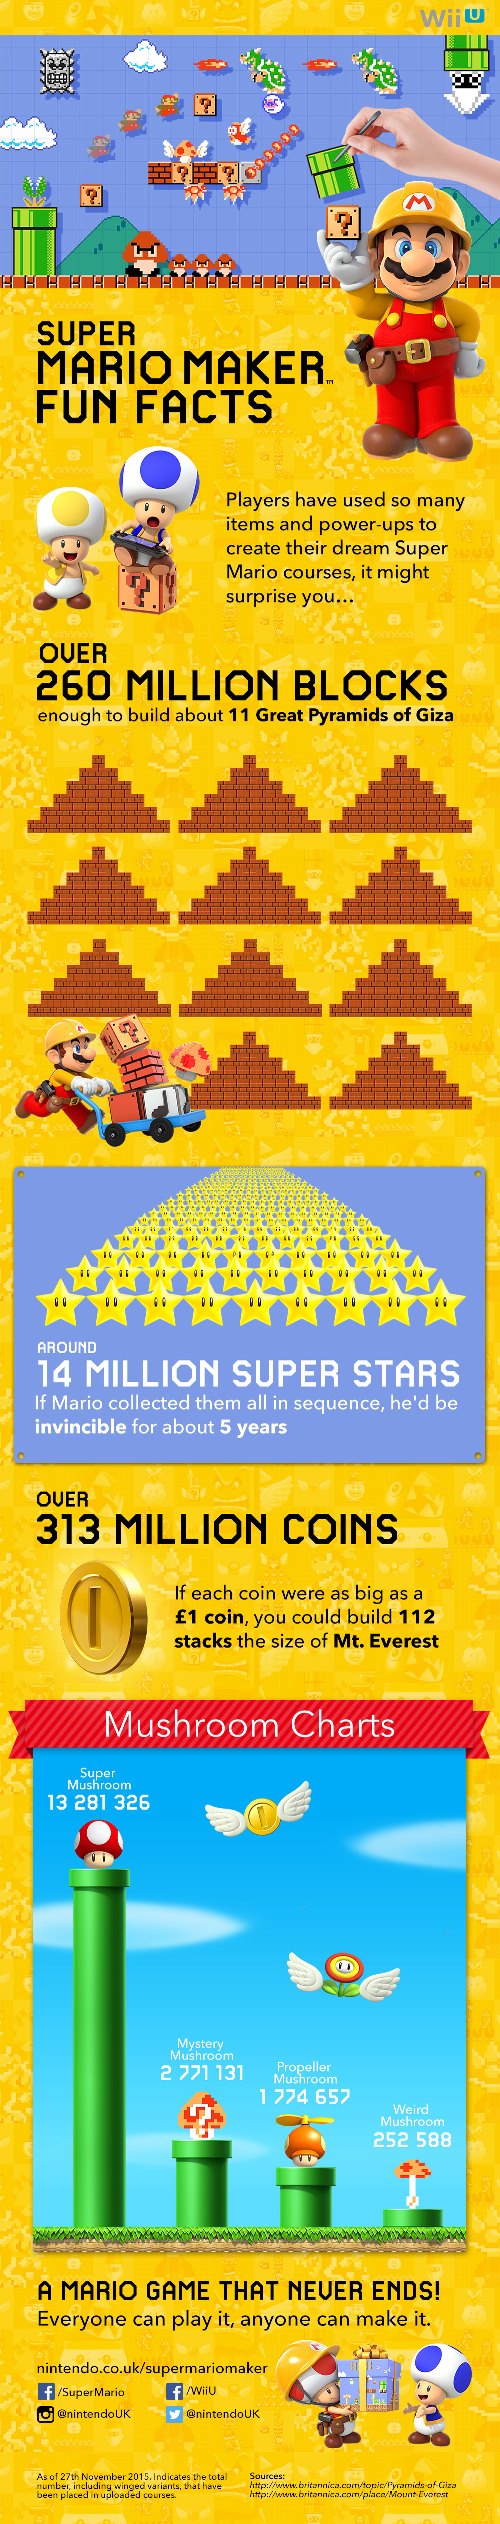 Super Mario "Fun infographic